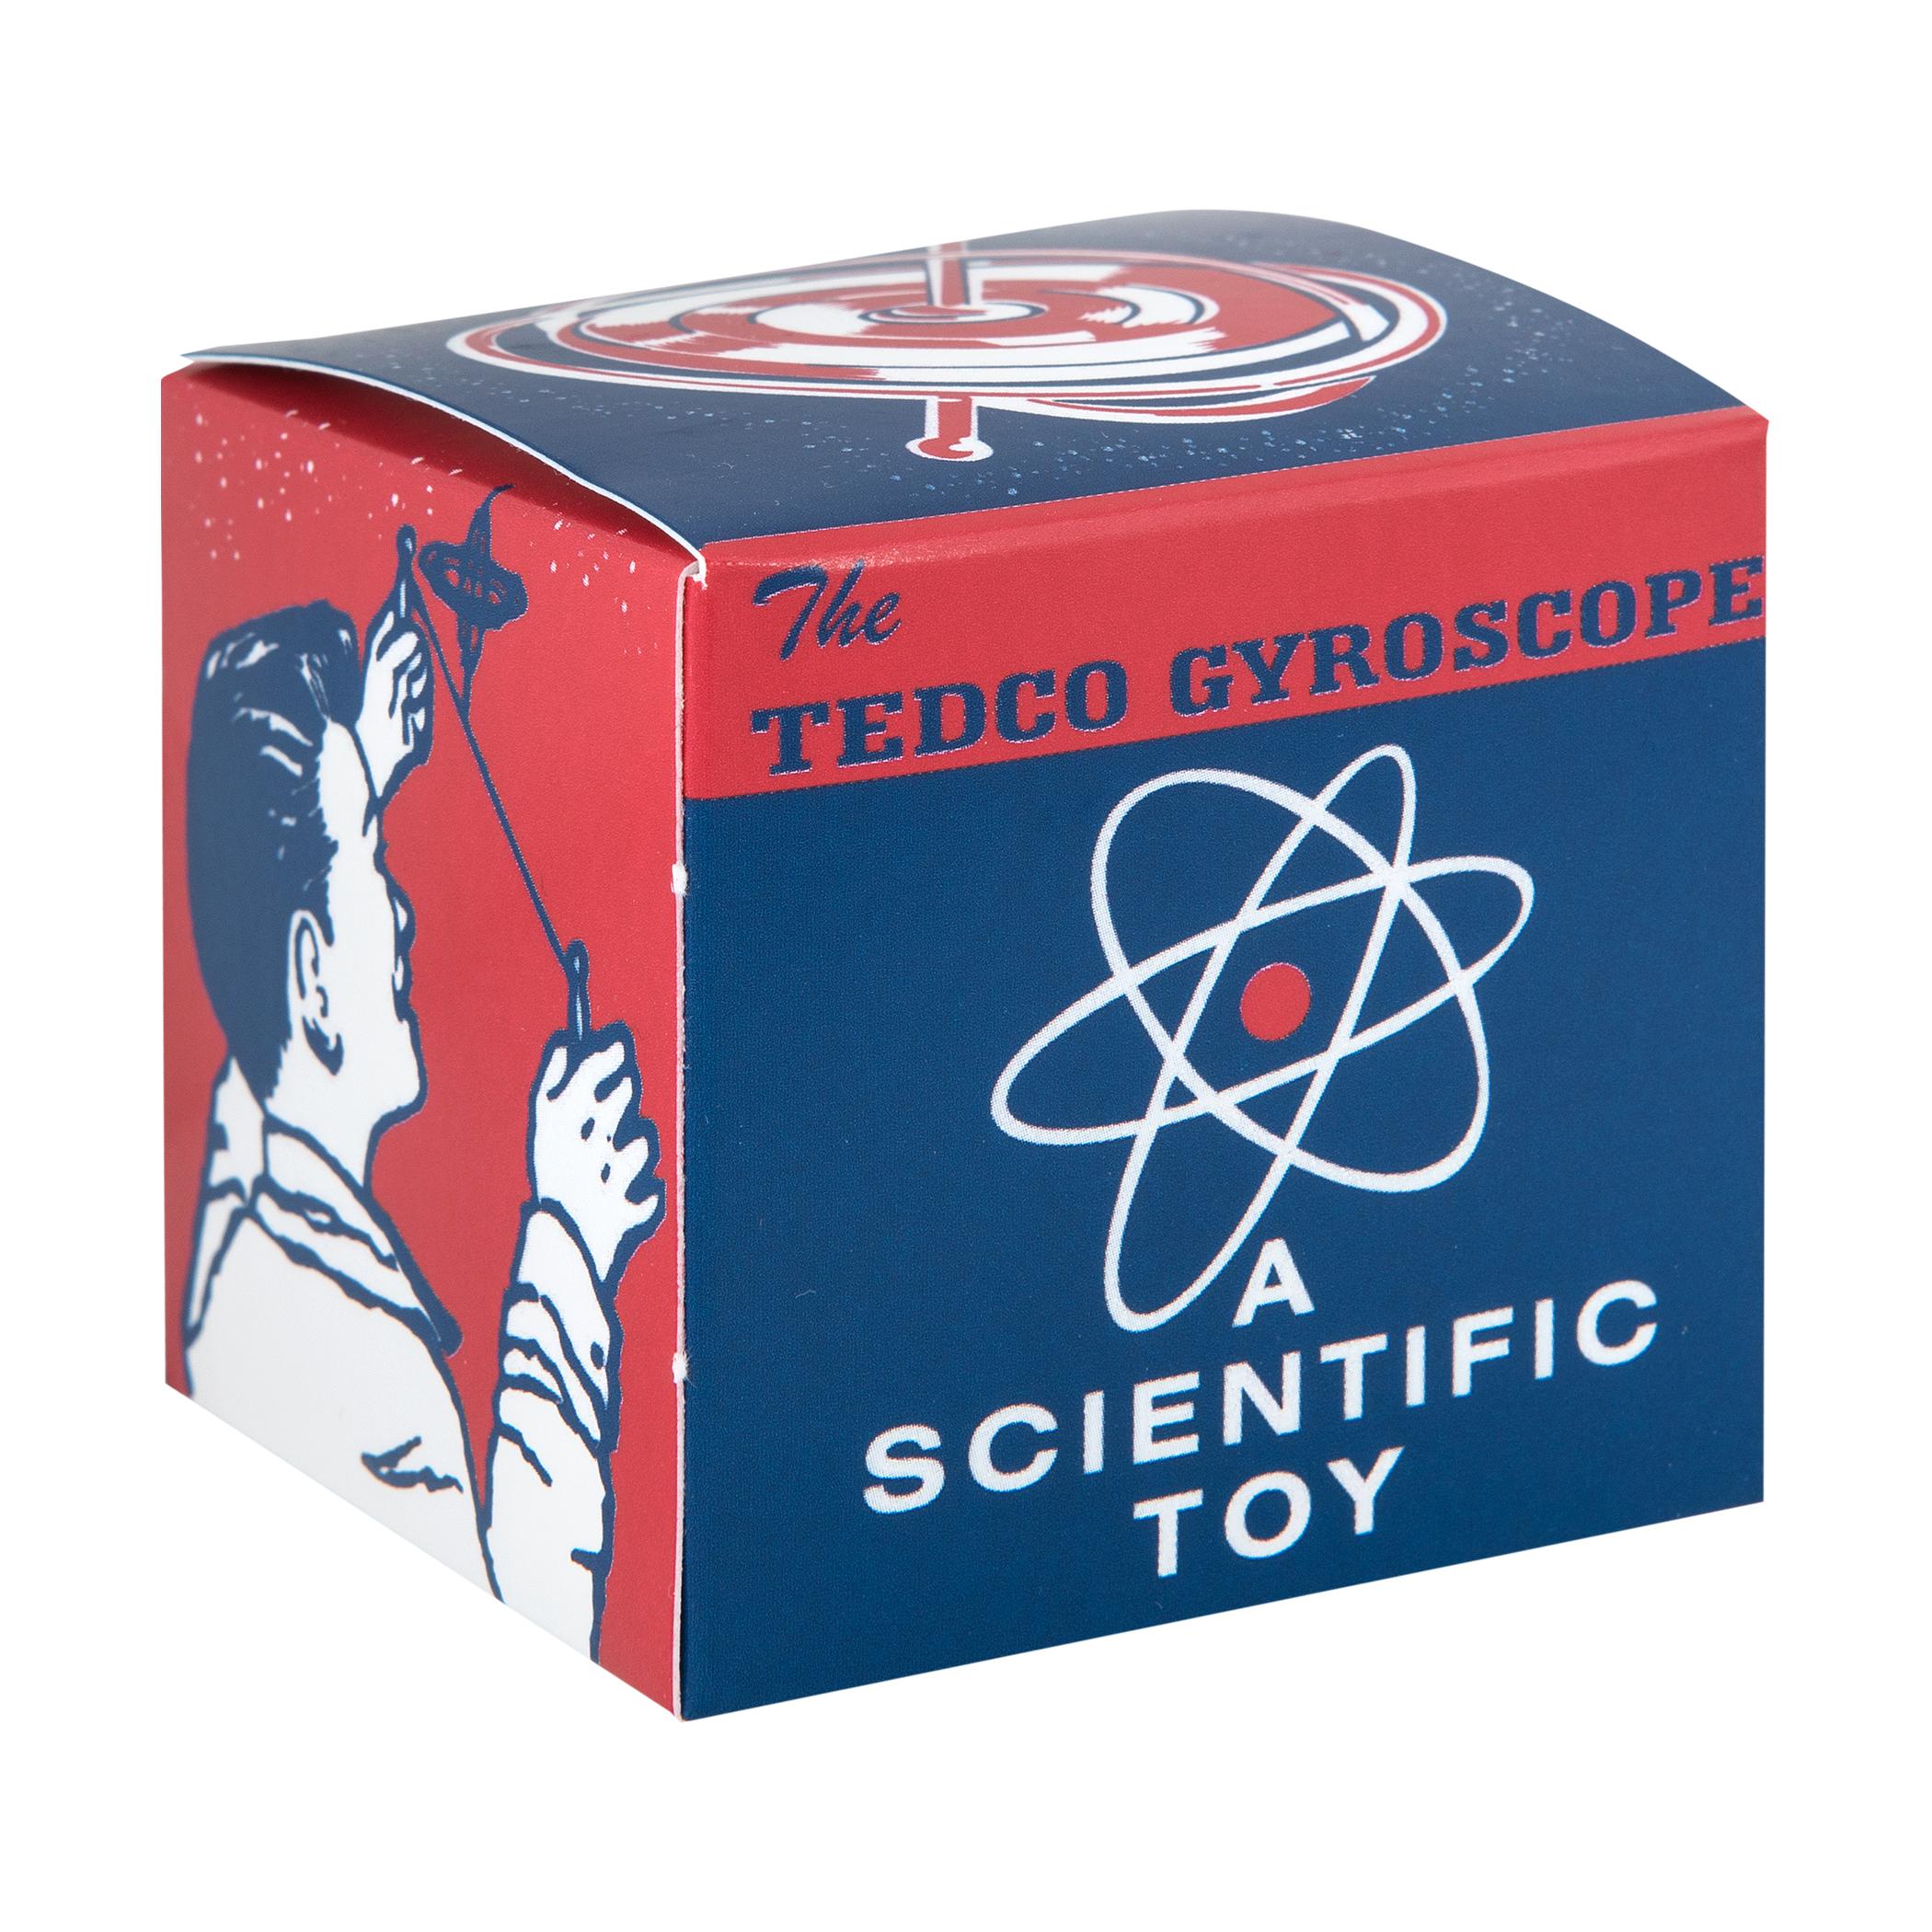 Retro Gyroscope Toy